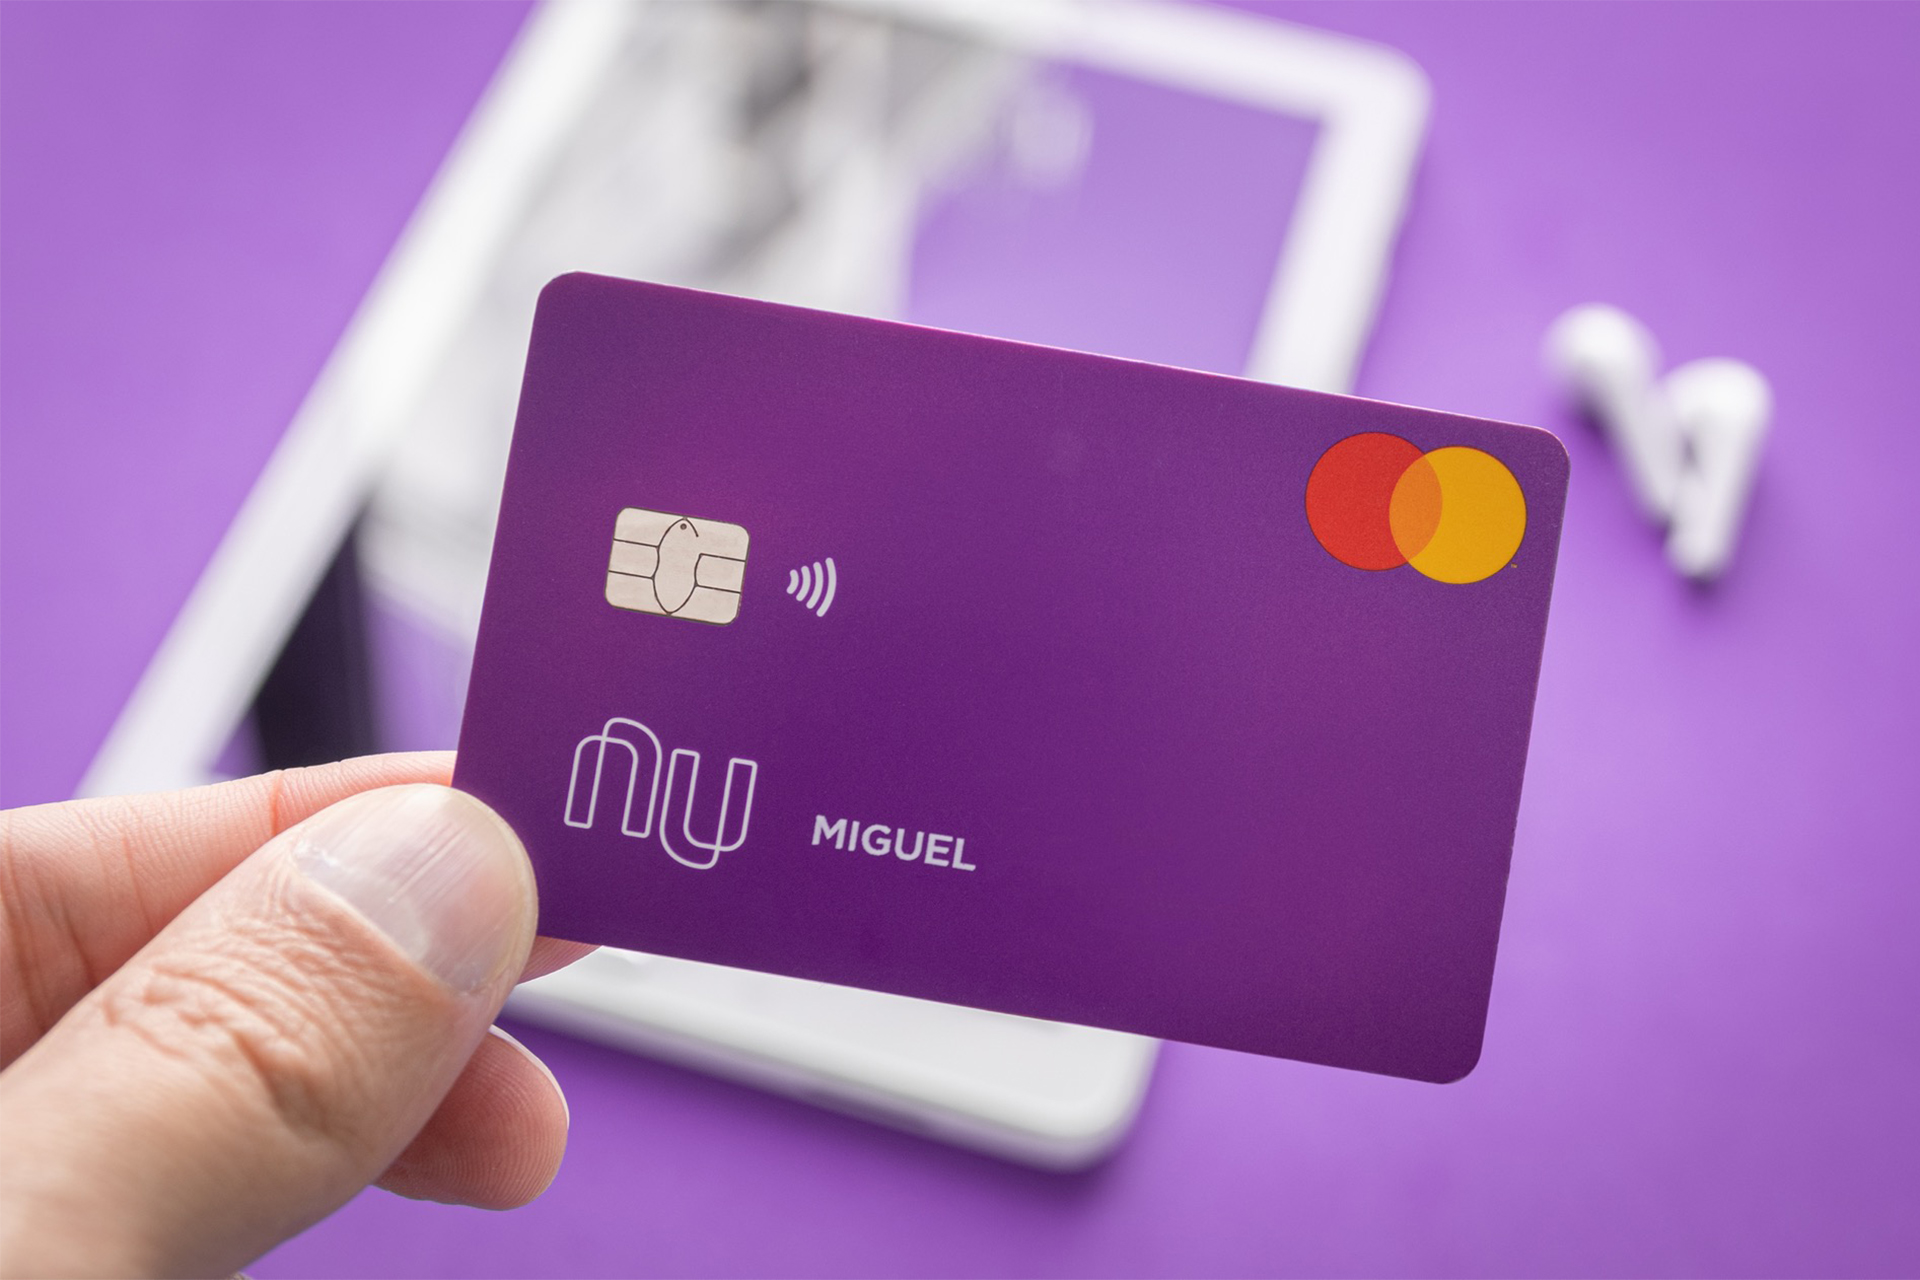 Maximize o potencial financeiro ao aumentar o limite do seu cartão Nubank com essa nova função